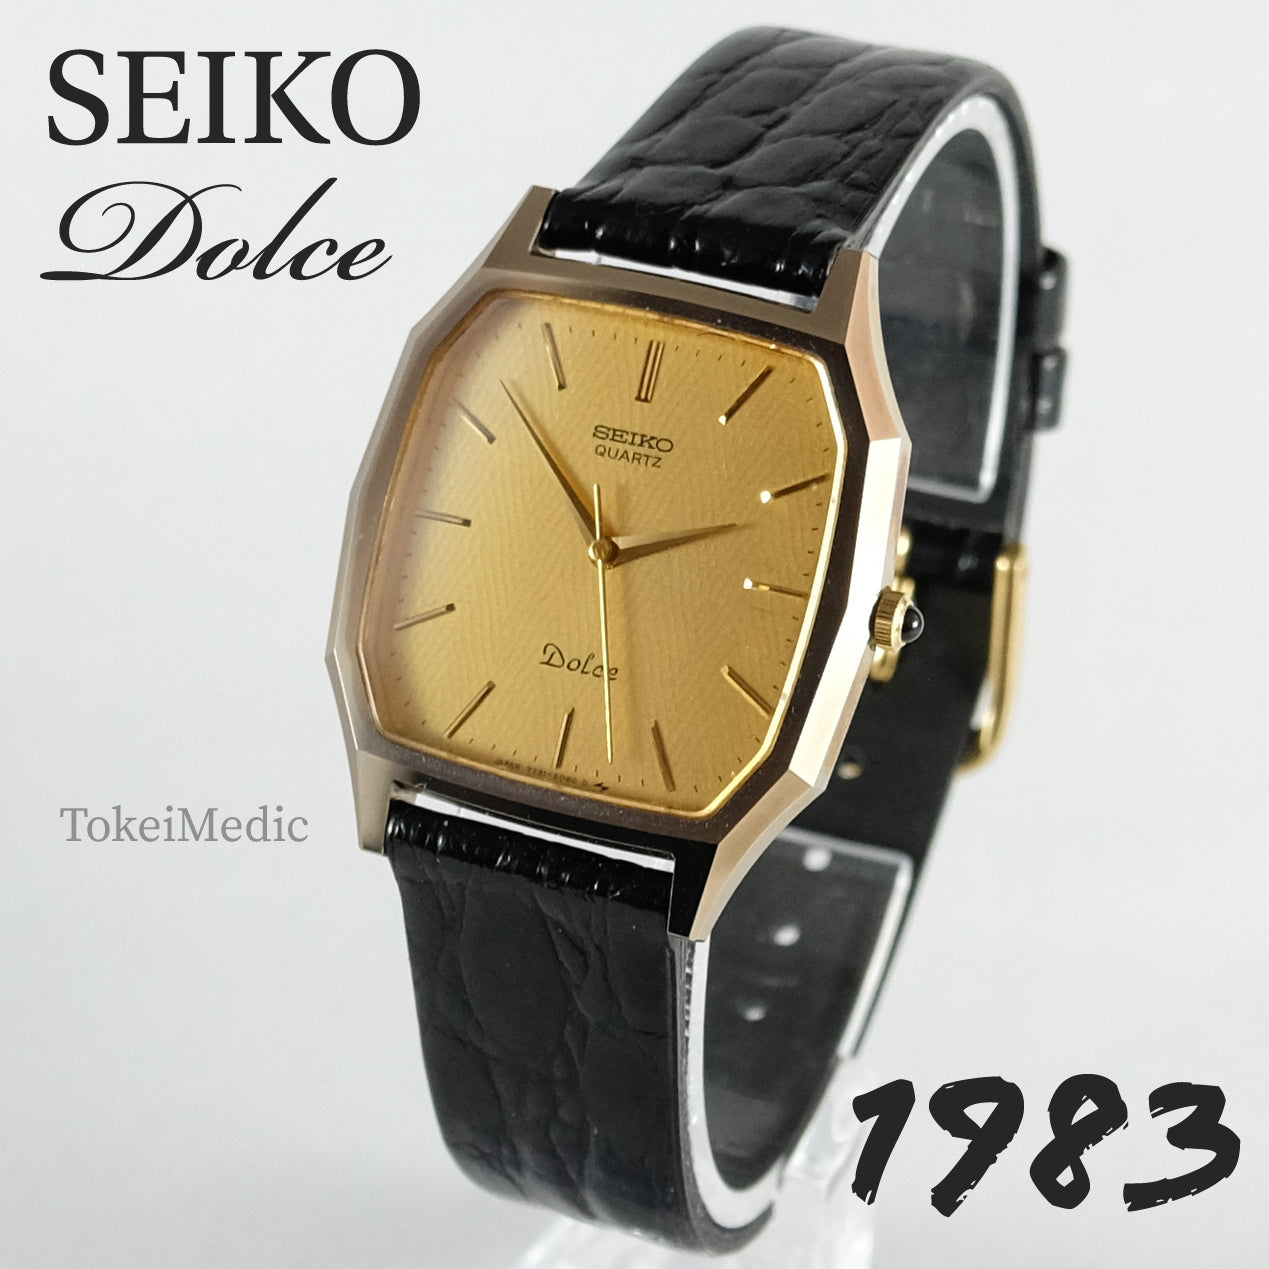 1983 Seiko Dolce 7731-5060